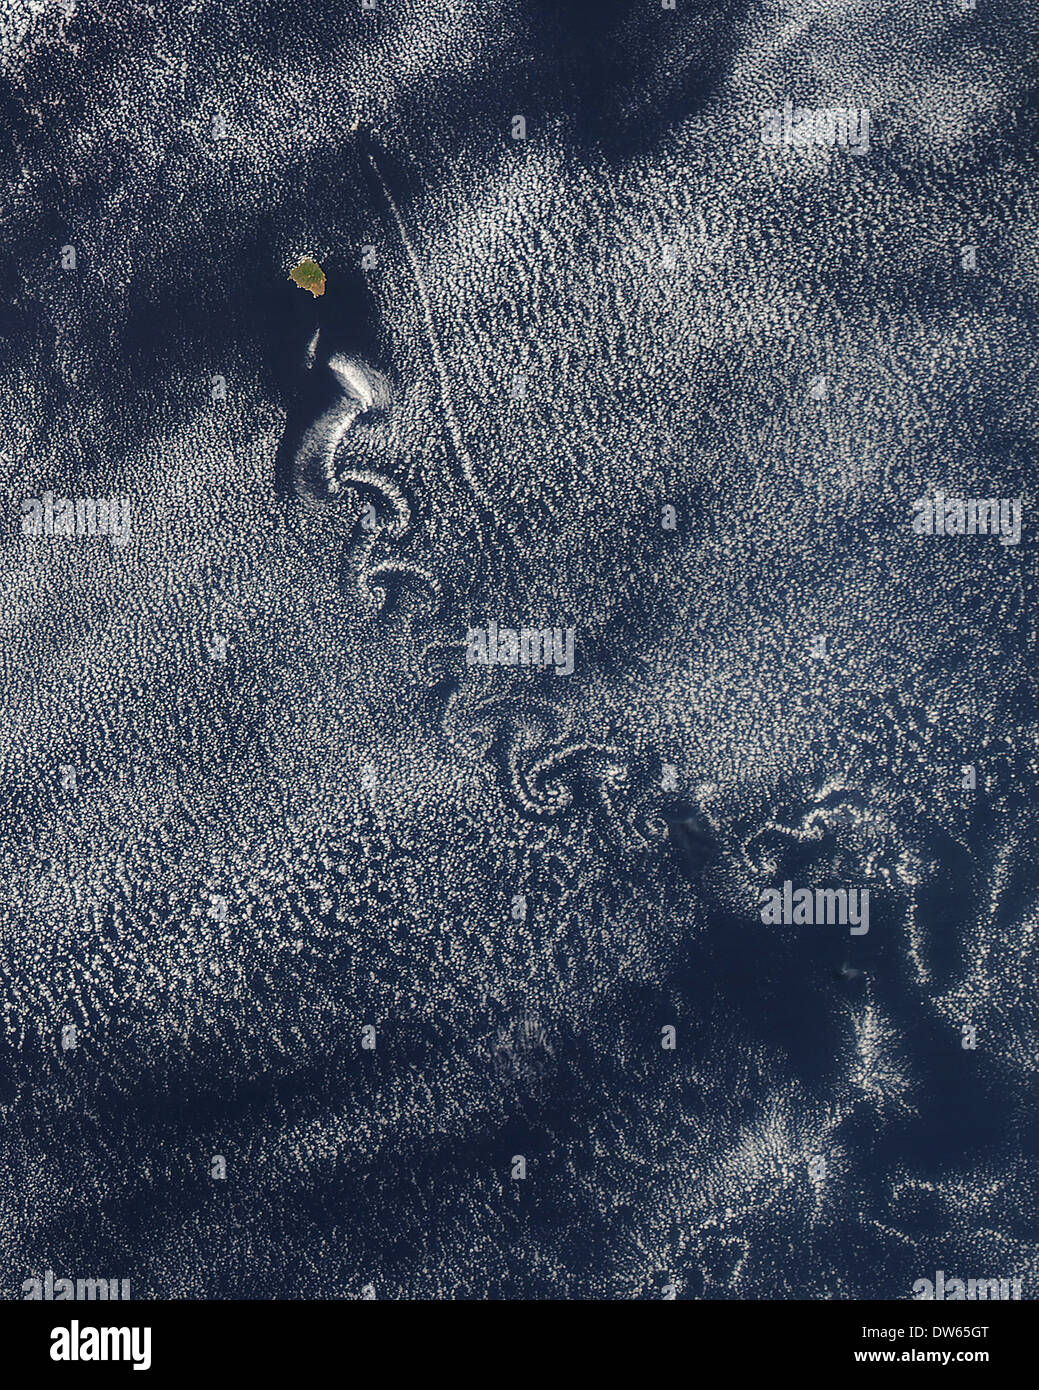 Formation De Nuages En Spirale Visible Au-dessus De L'océan